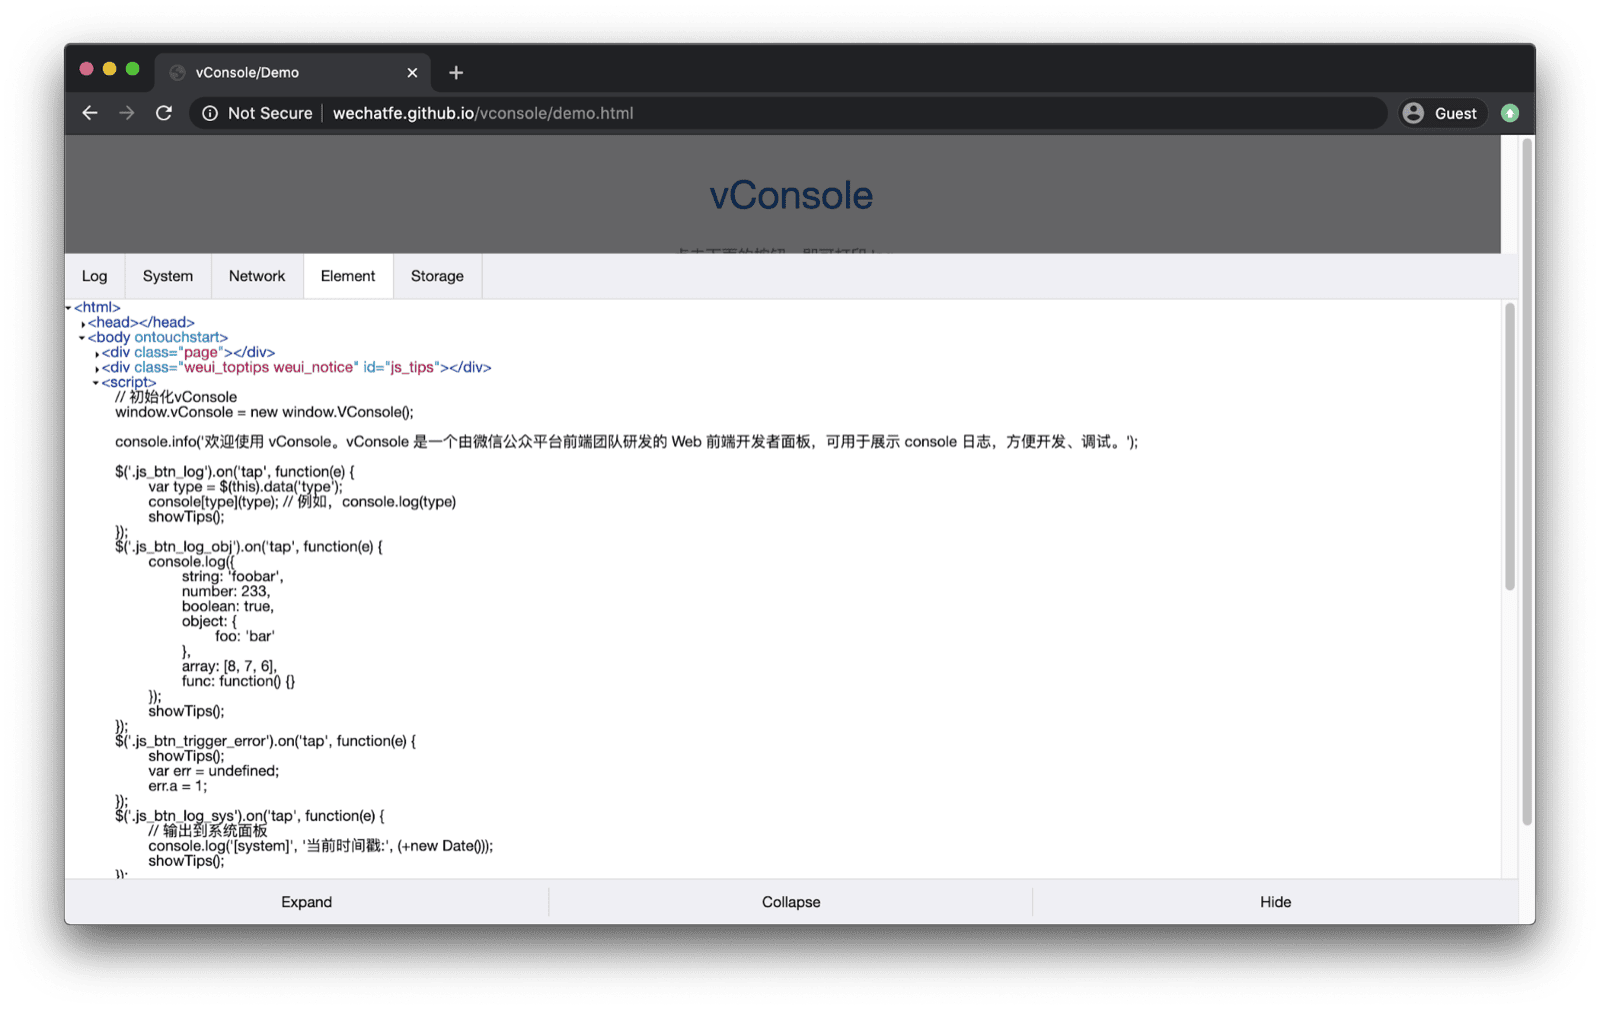 Демонстрационное приложение vConsole. Виртуальная консоль открывается внизу и содержит вкладки для журналов, системы, сети, элементов и хранилища.